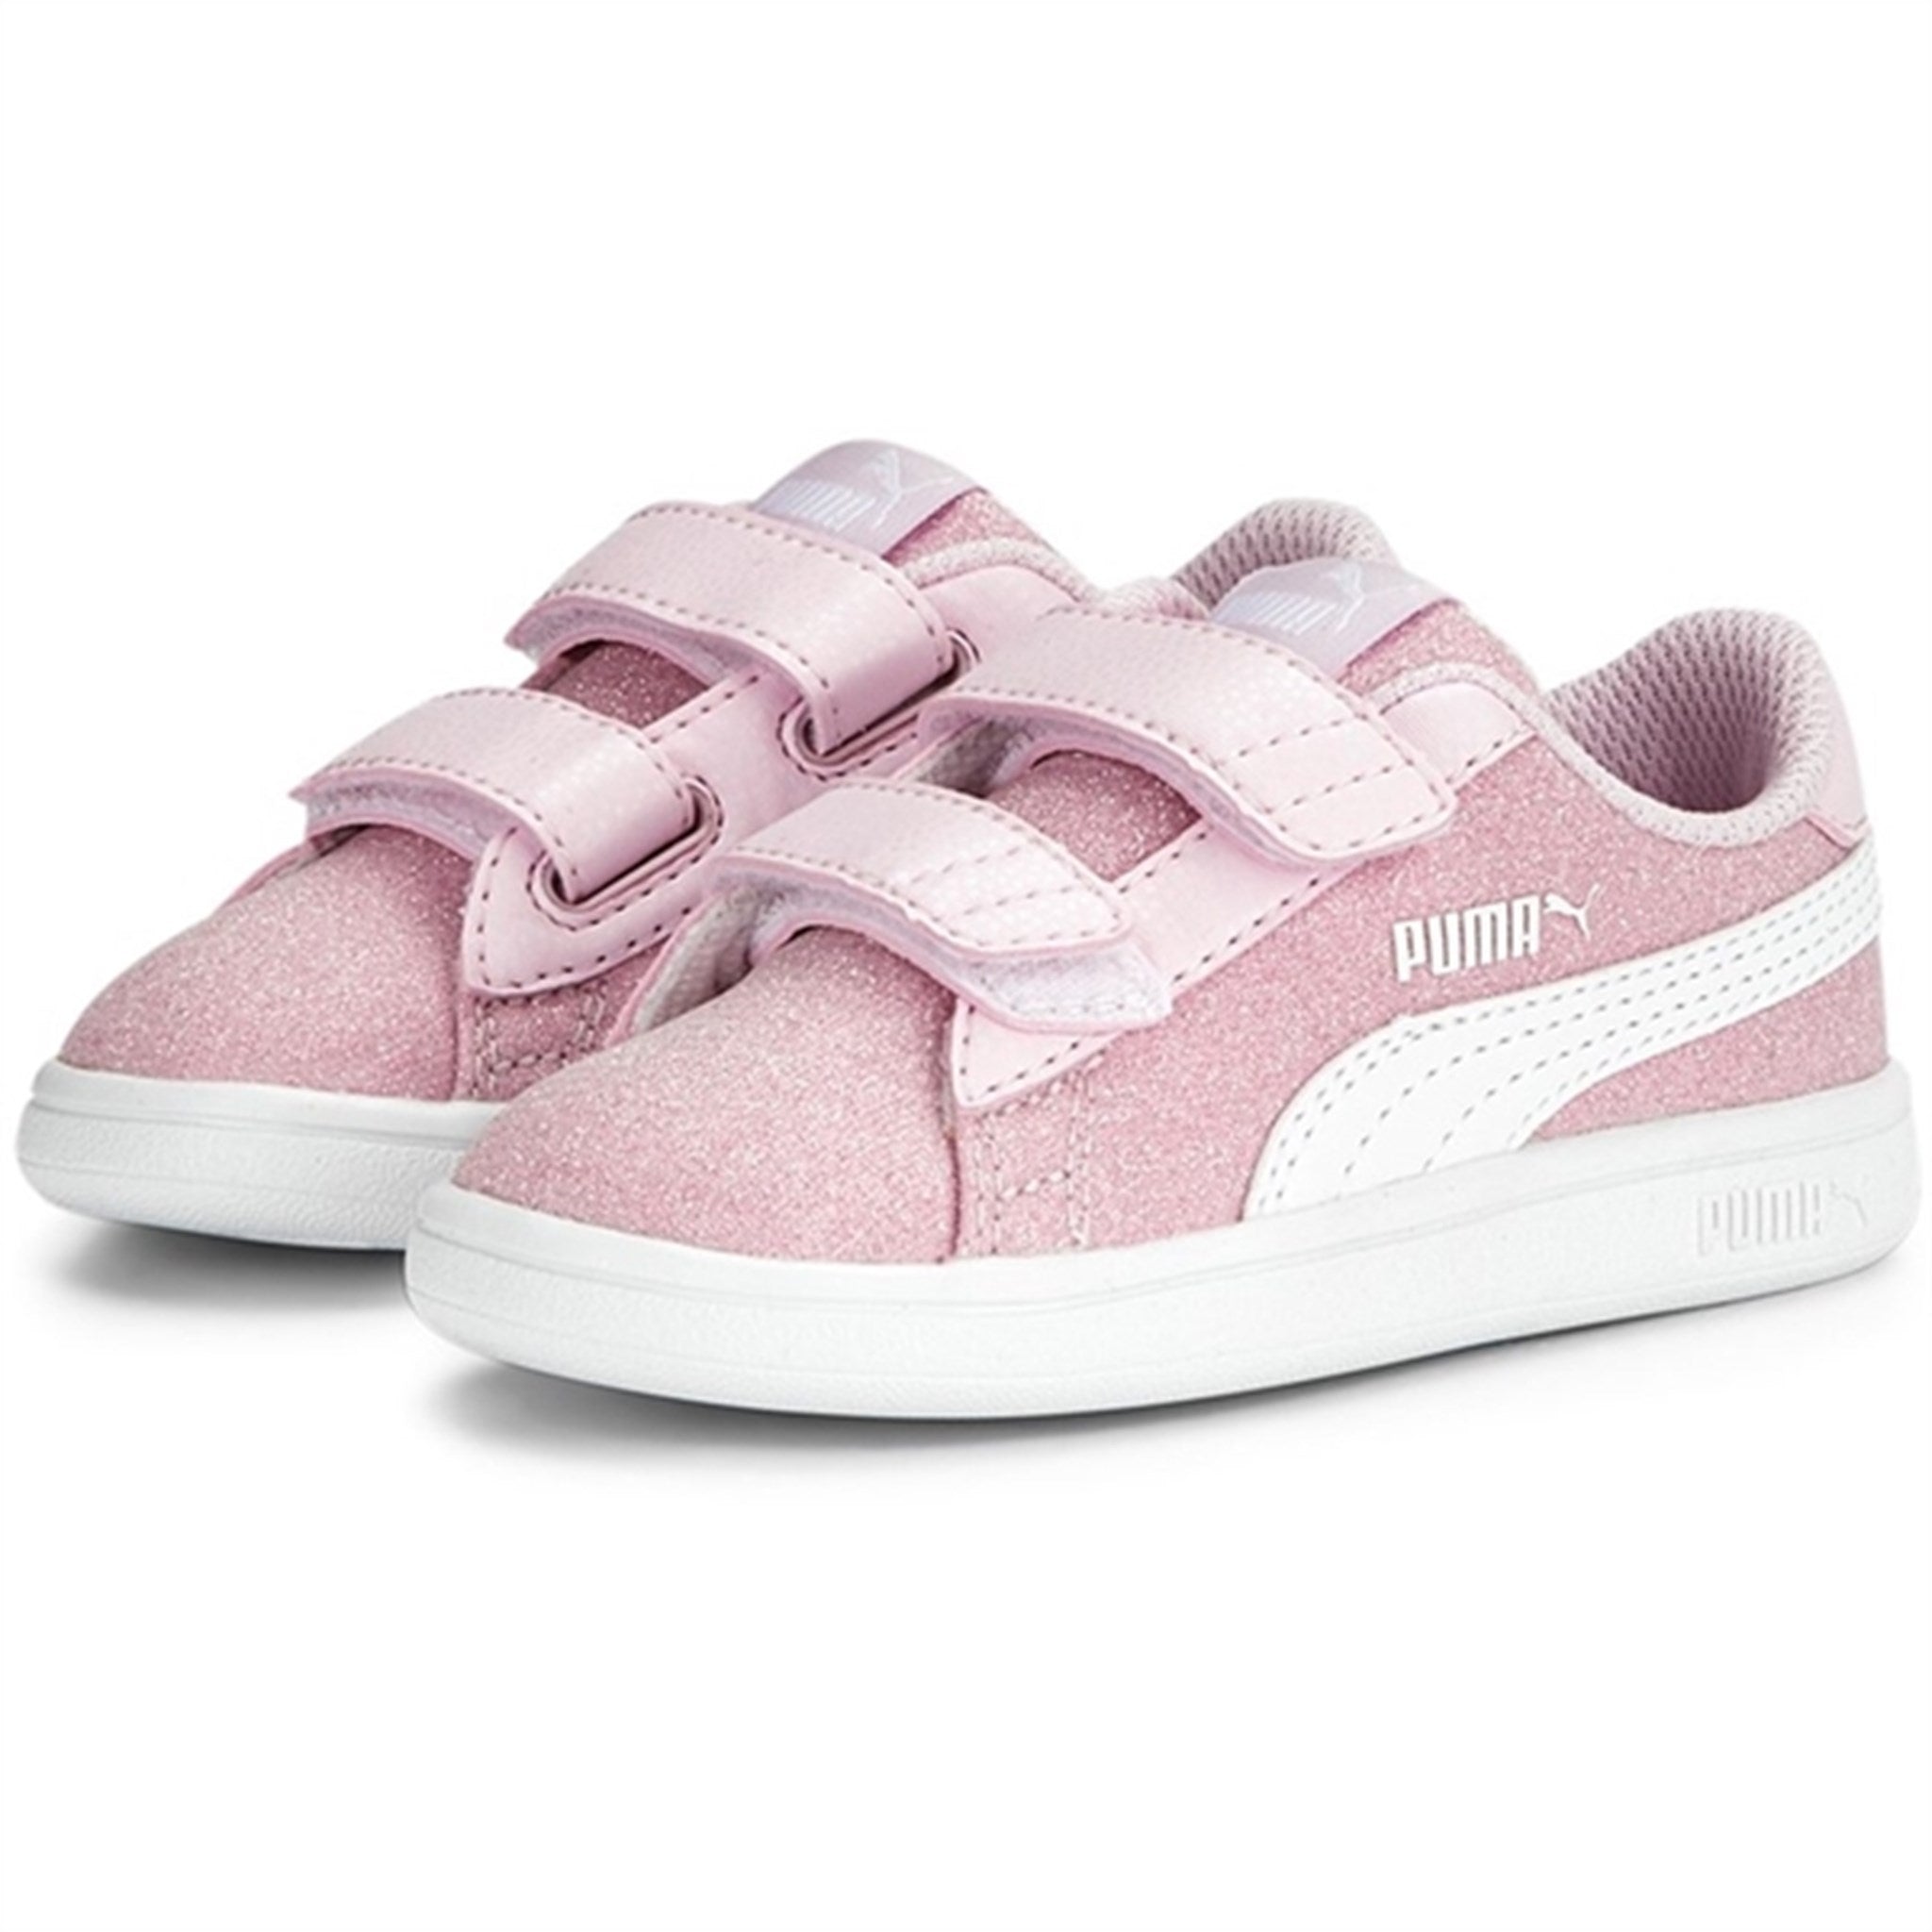 Puma Smash v2 Glitz Glam V Inf Pearl Pink-White Sneakers